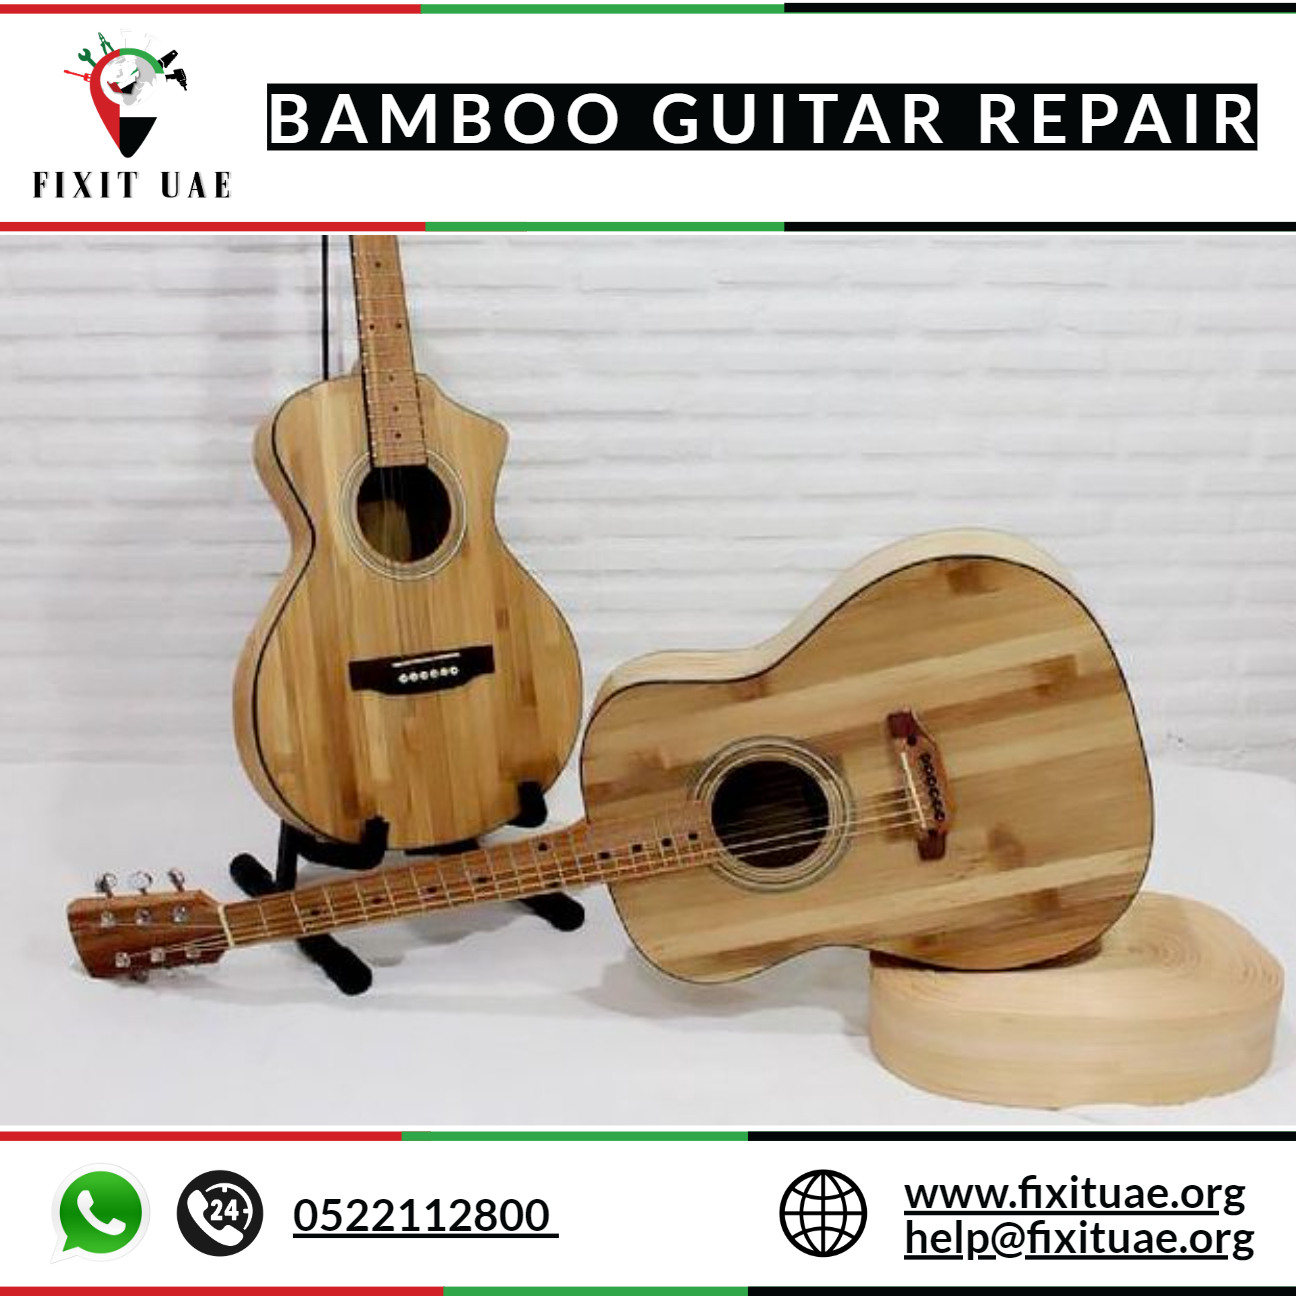 Bamboo guitar repair